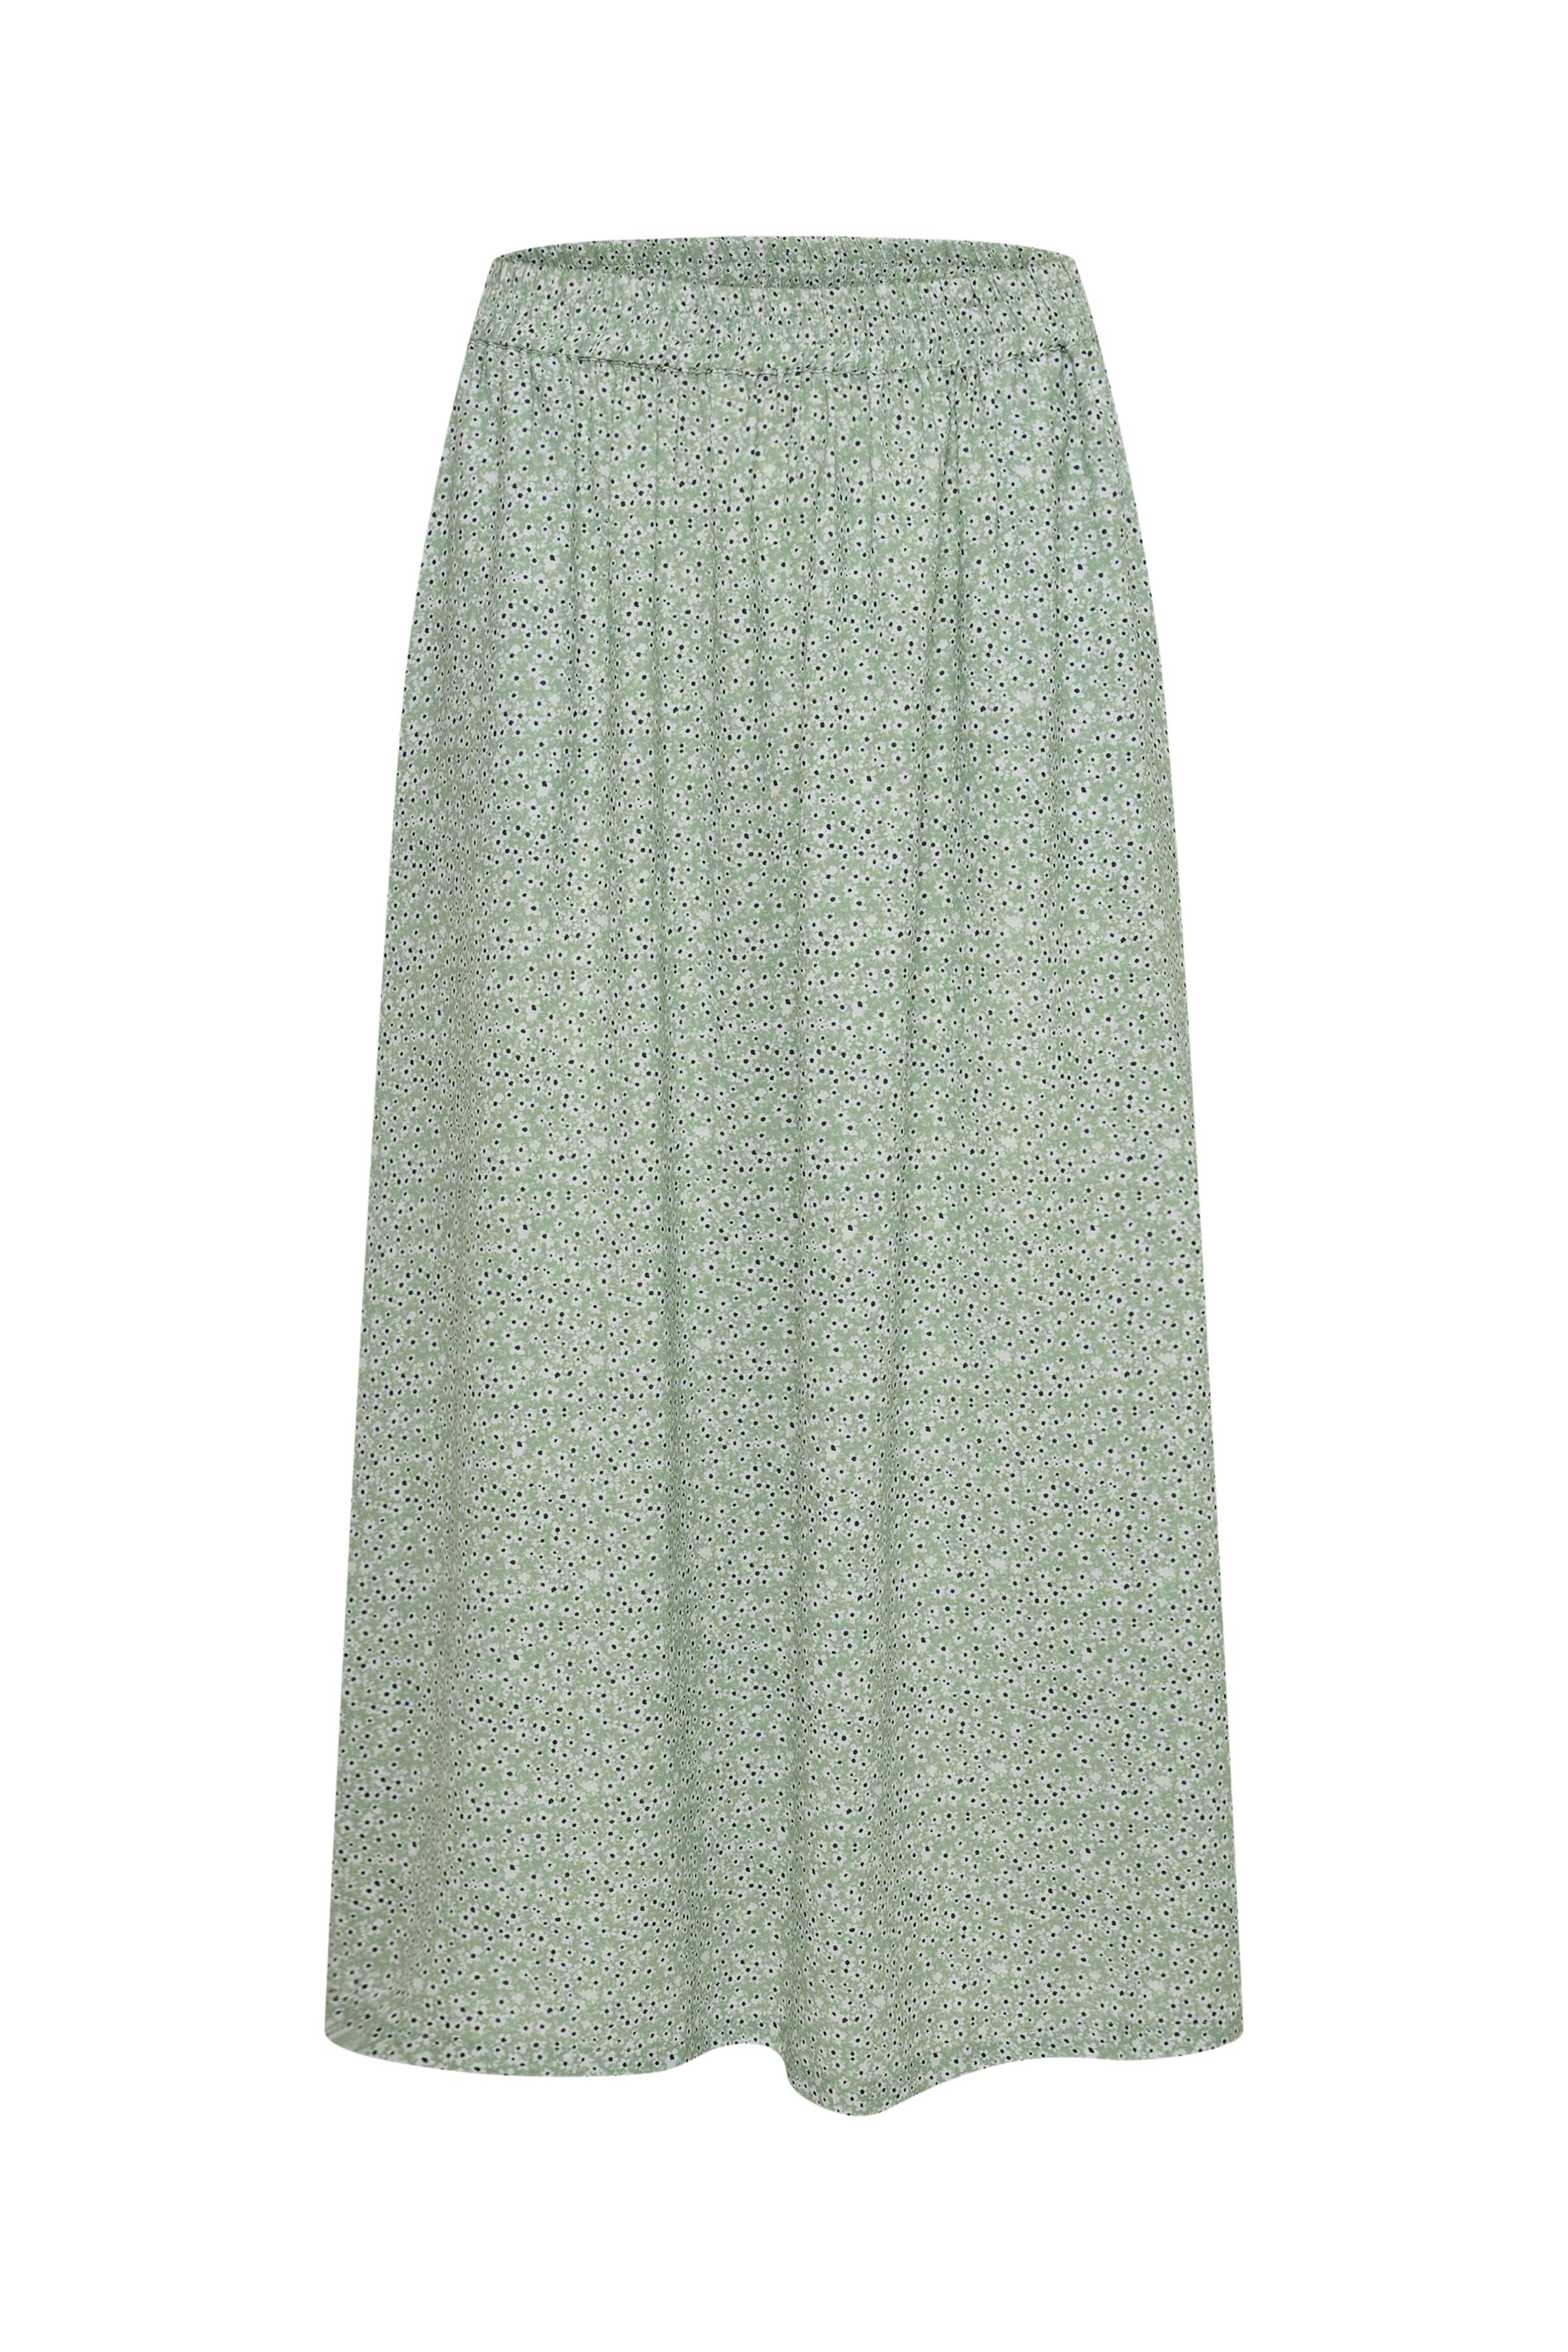 Grøn nederdel med mønster